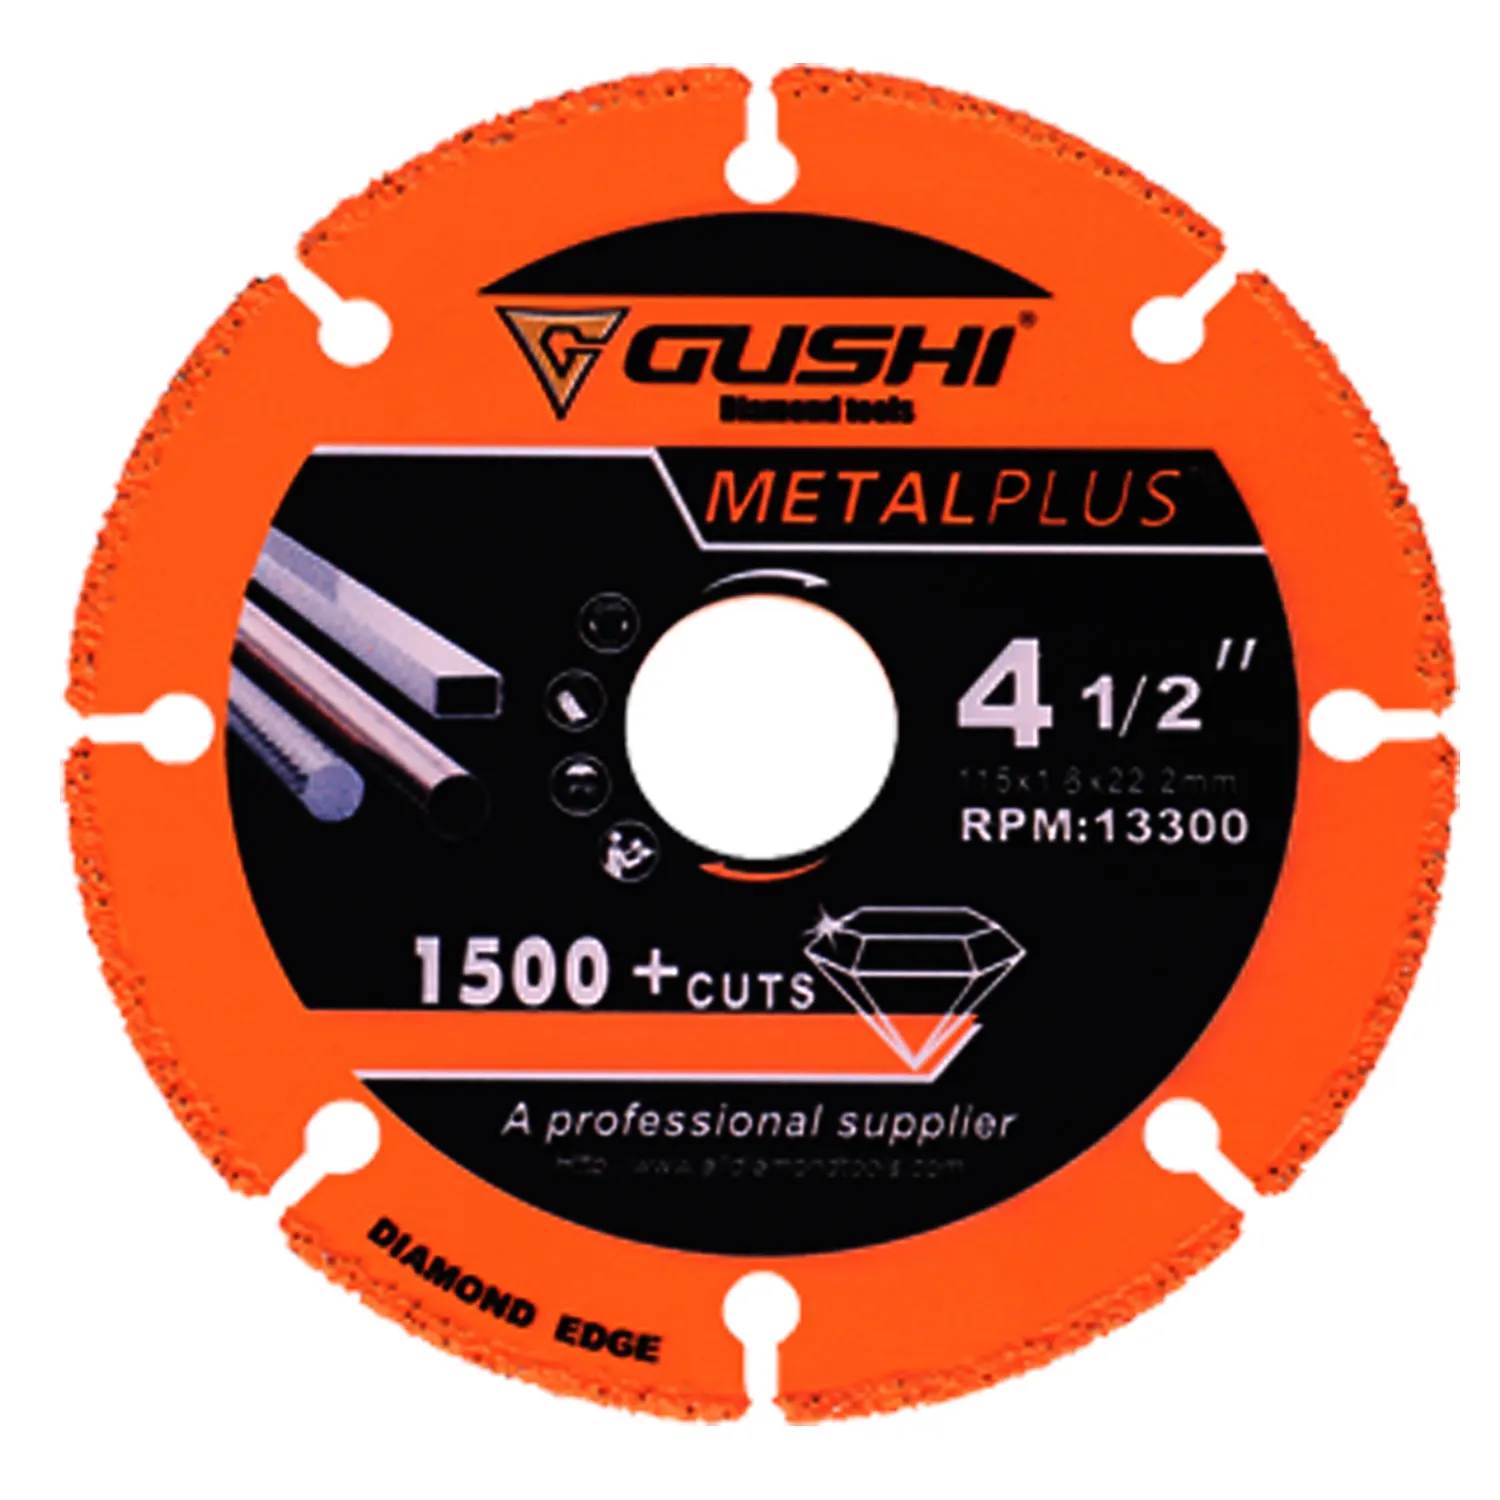 Großhandel OEM 350mm Metal plus Circular Diamond Edge Cutting Sägeblatt zum Schneiden von Metall